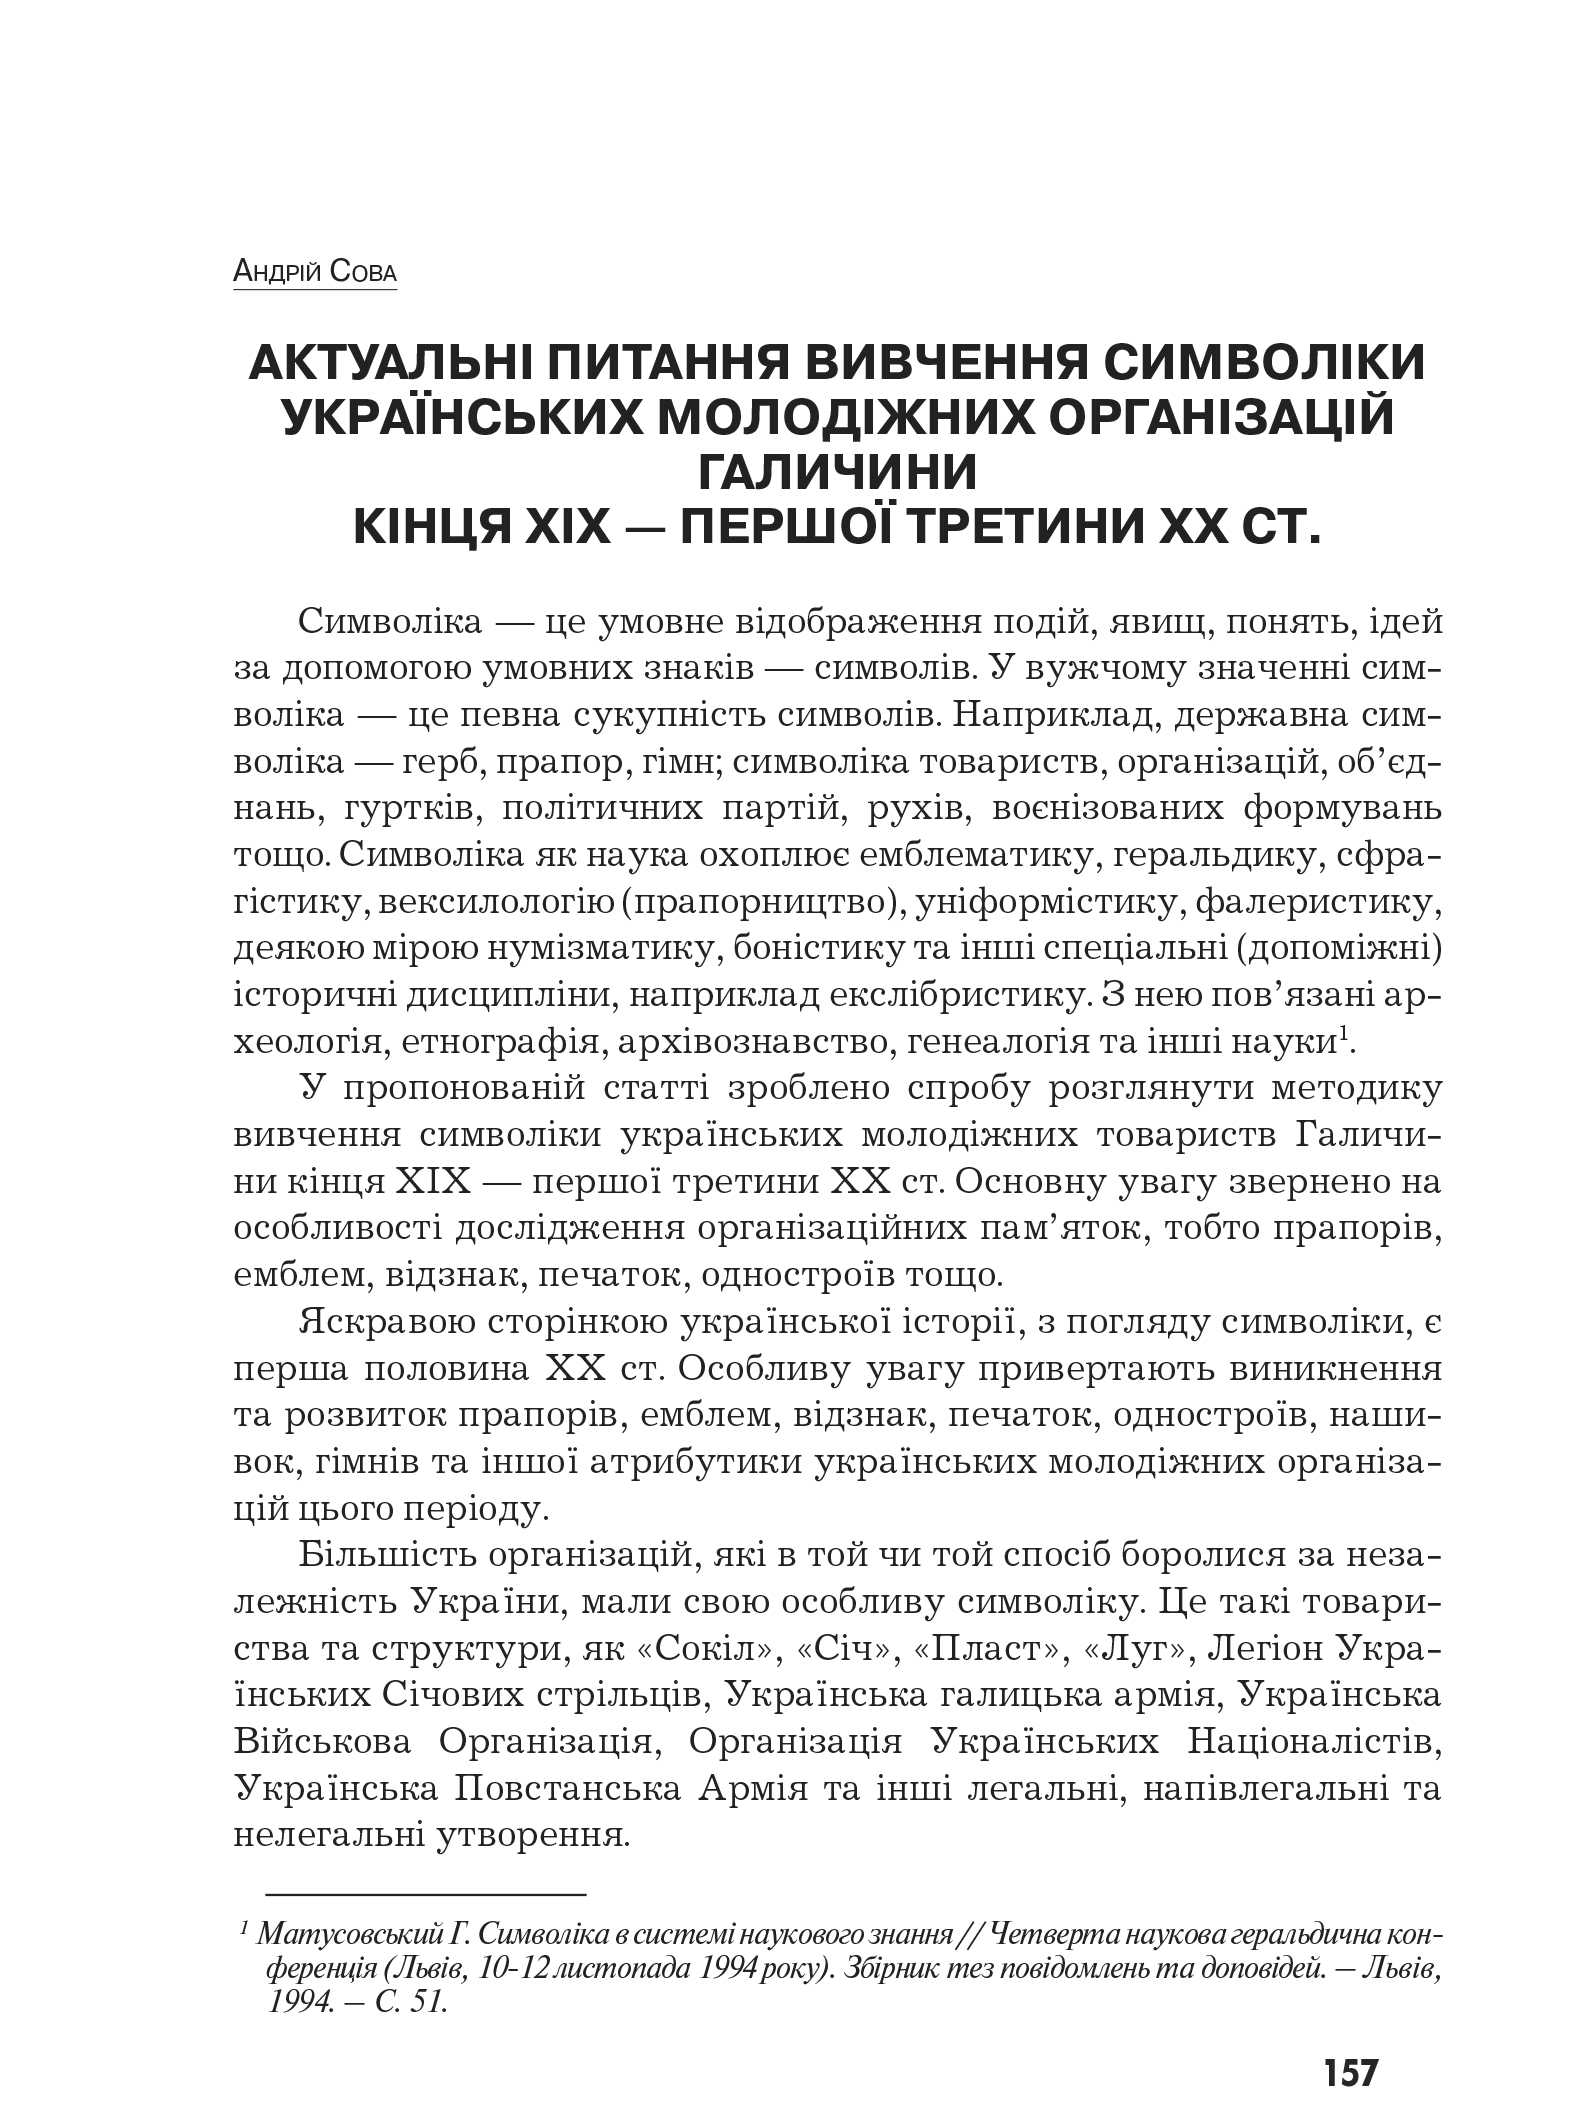 Український визвольний рух №9, ст. 157 - 180